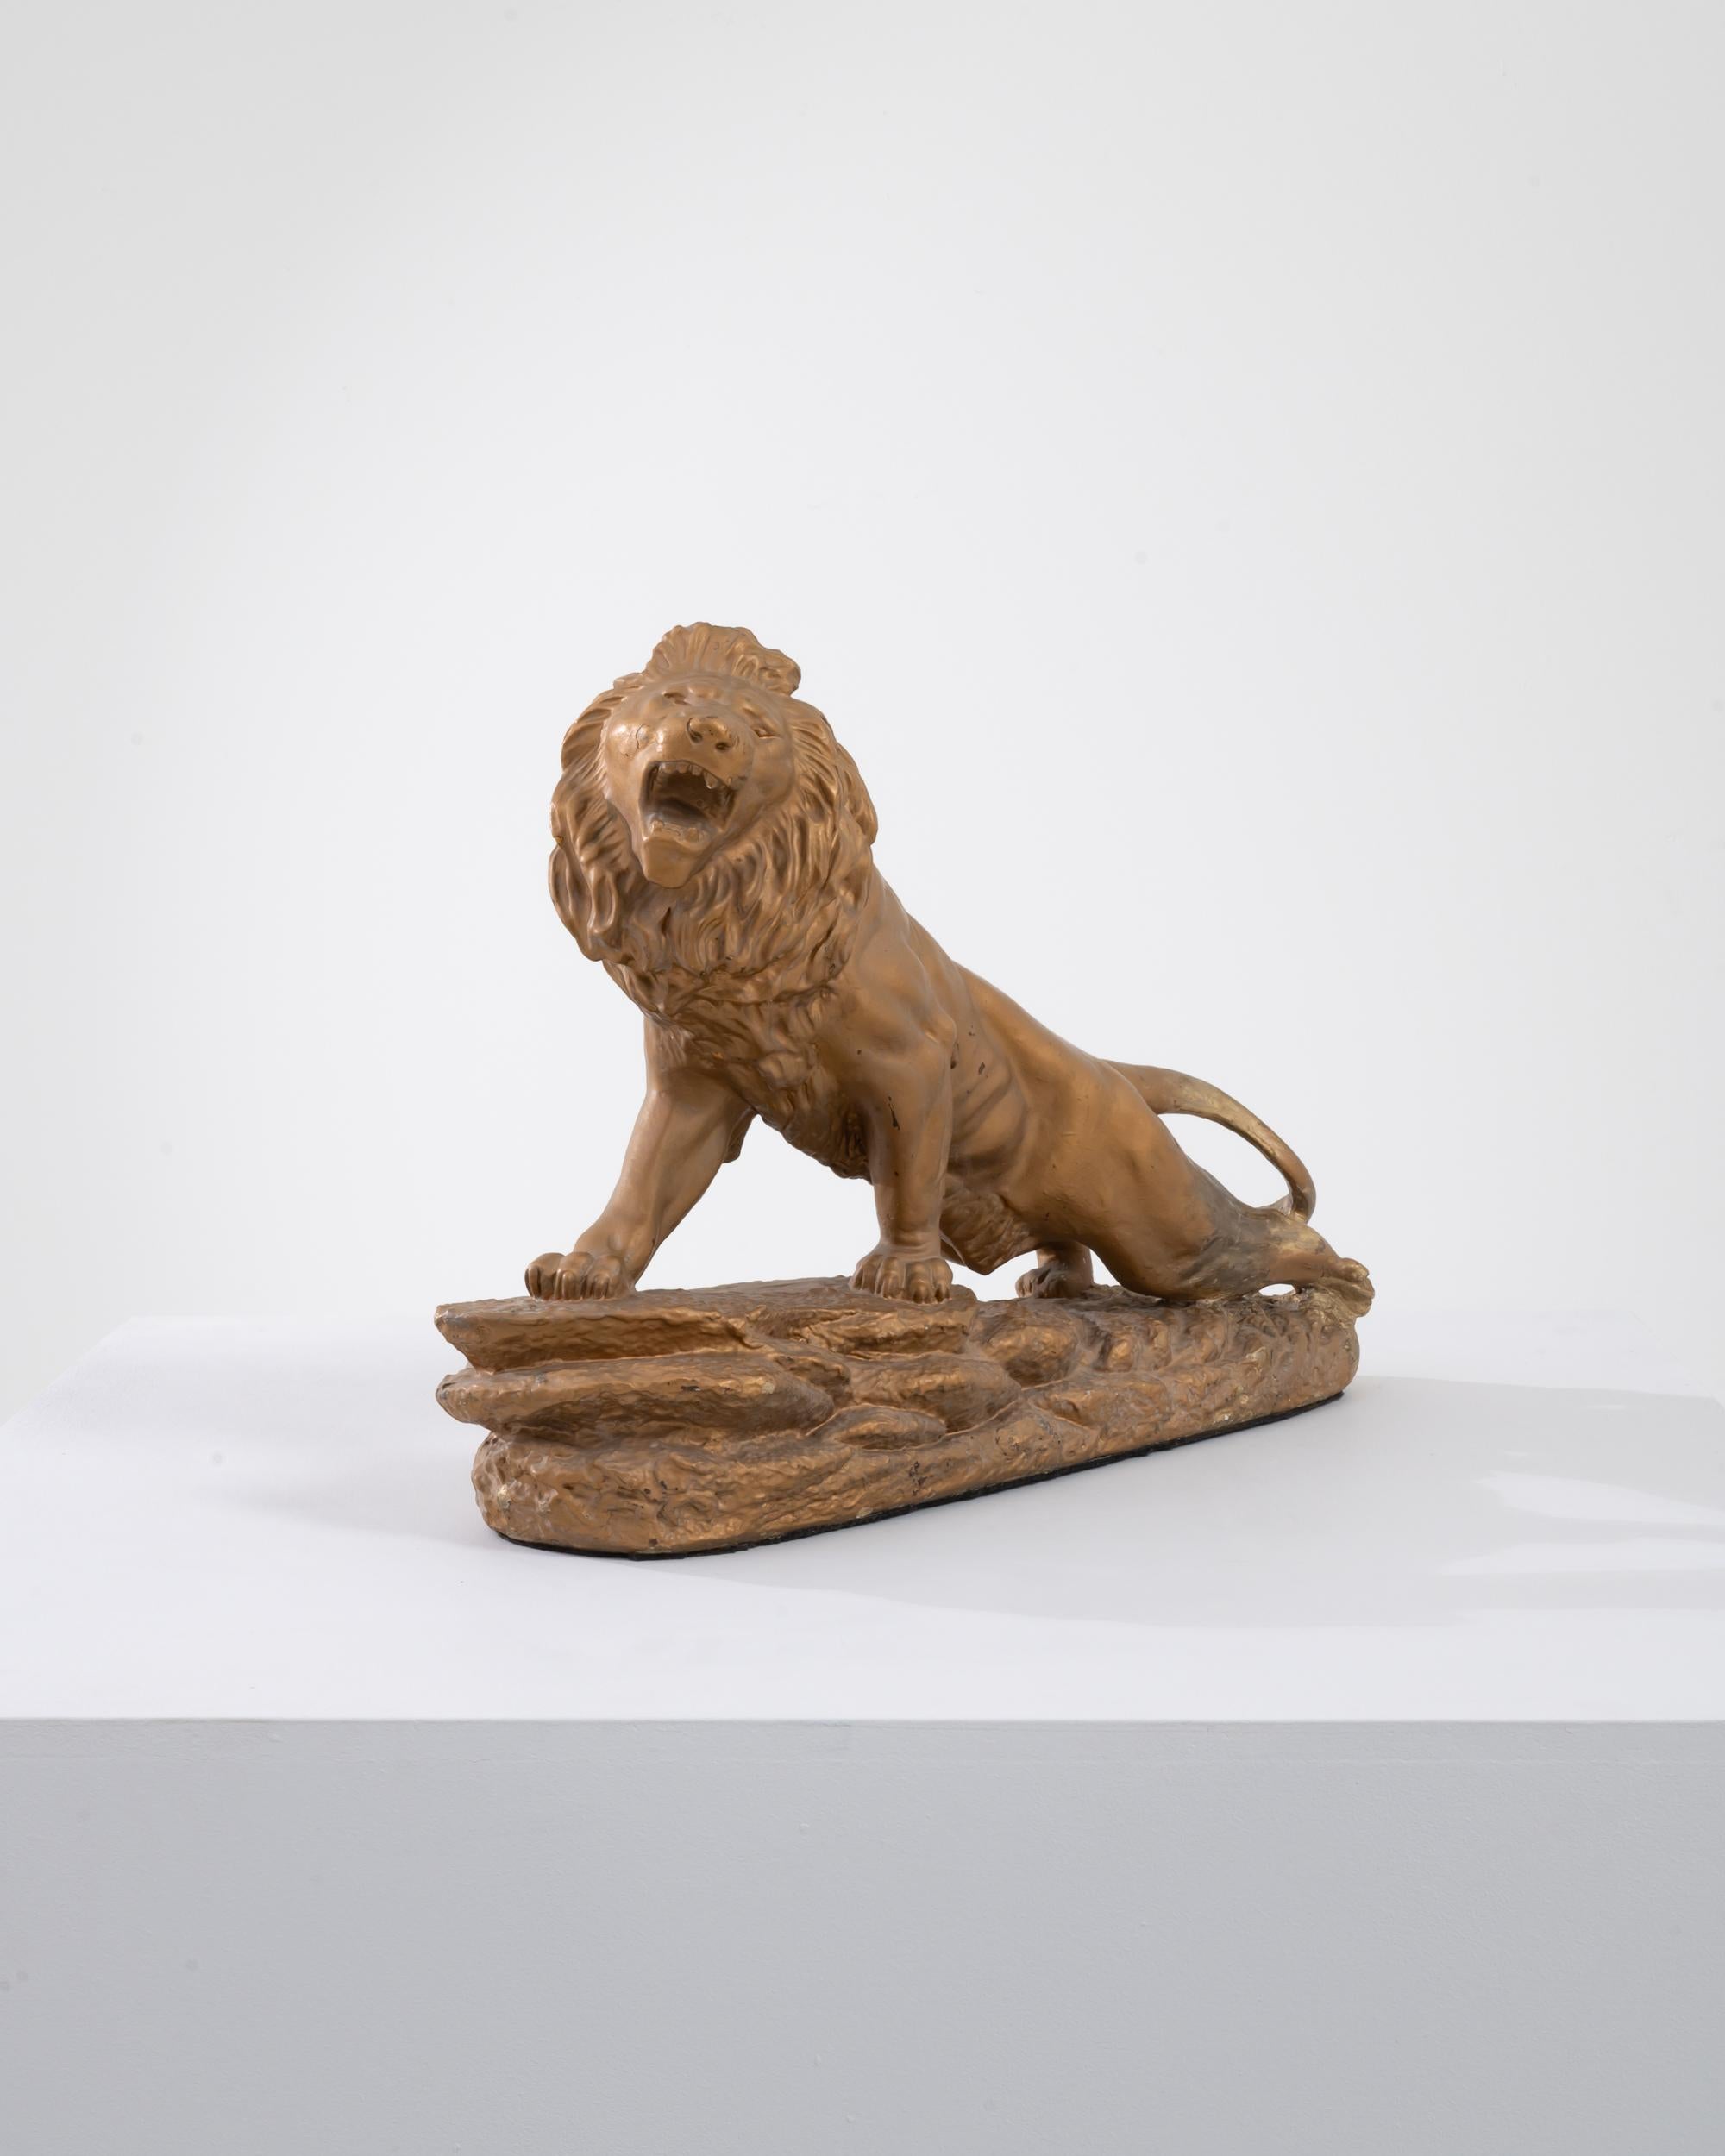 Eine bemalte Gipsskulptur aus Frankreich um 1900. Diese Skulptur stellt einen Löwen dar, der auf eine Klippe klettert, seine Beine nach hinten streckt und ein wildes Brüllen von sich gibt. Die goldene Farbe, mit der die aus Gips gegossene Skulptur